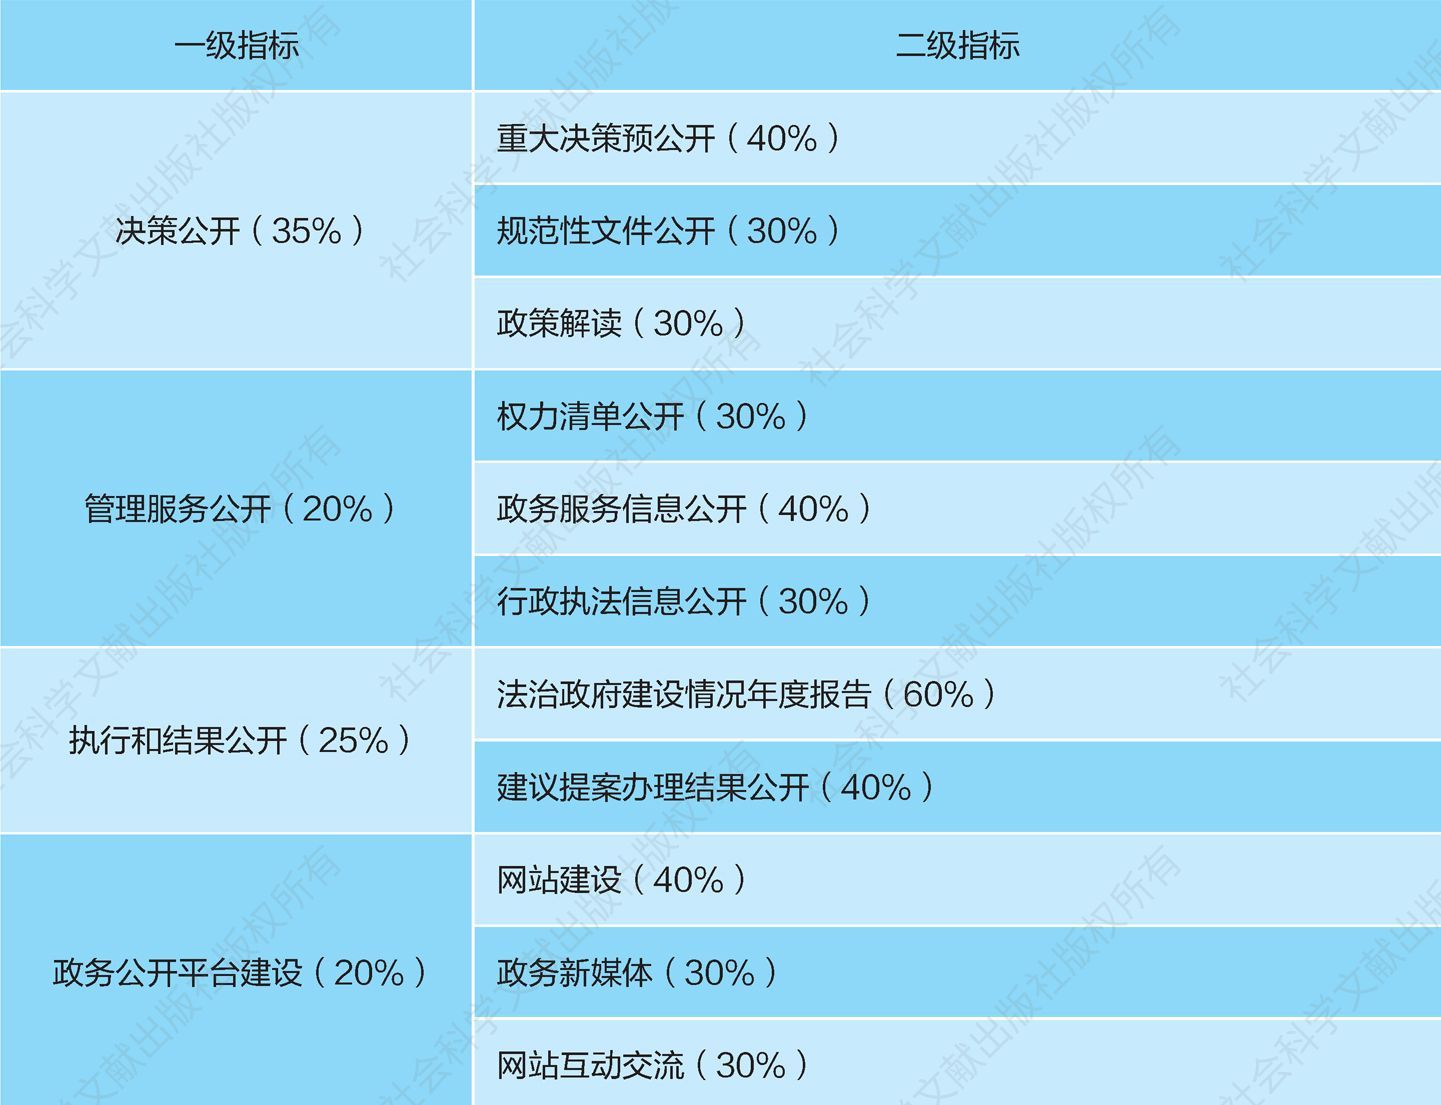 表1 中国政府透明度指数指标体系（国务院部门）